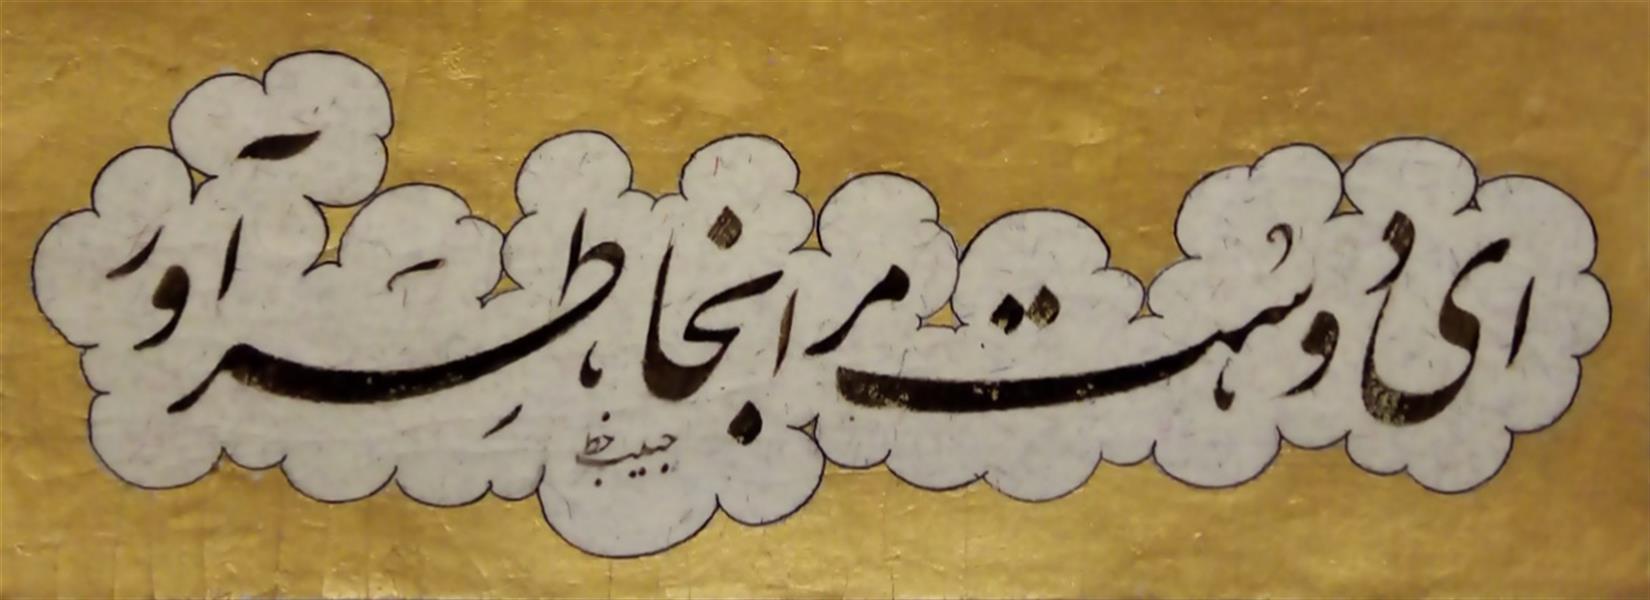 هنر خوشنویسی محفل خوشنویسی (Hghgallery (Habib Qanbari ای دوست مرا ب خاطر آور
خوشنویسی حبیب قنبری
1399
اجرا با قلم 7 میلیمتر و مرکب ترکیبی